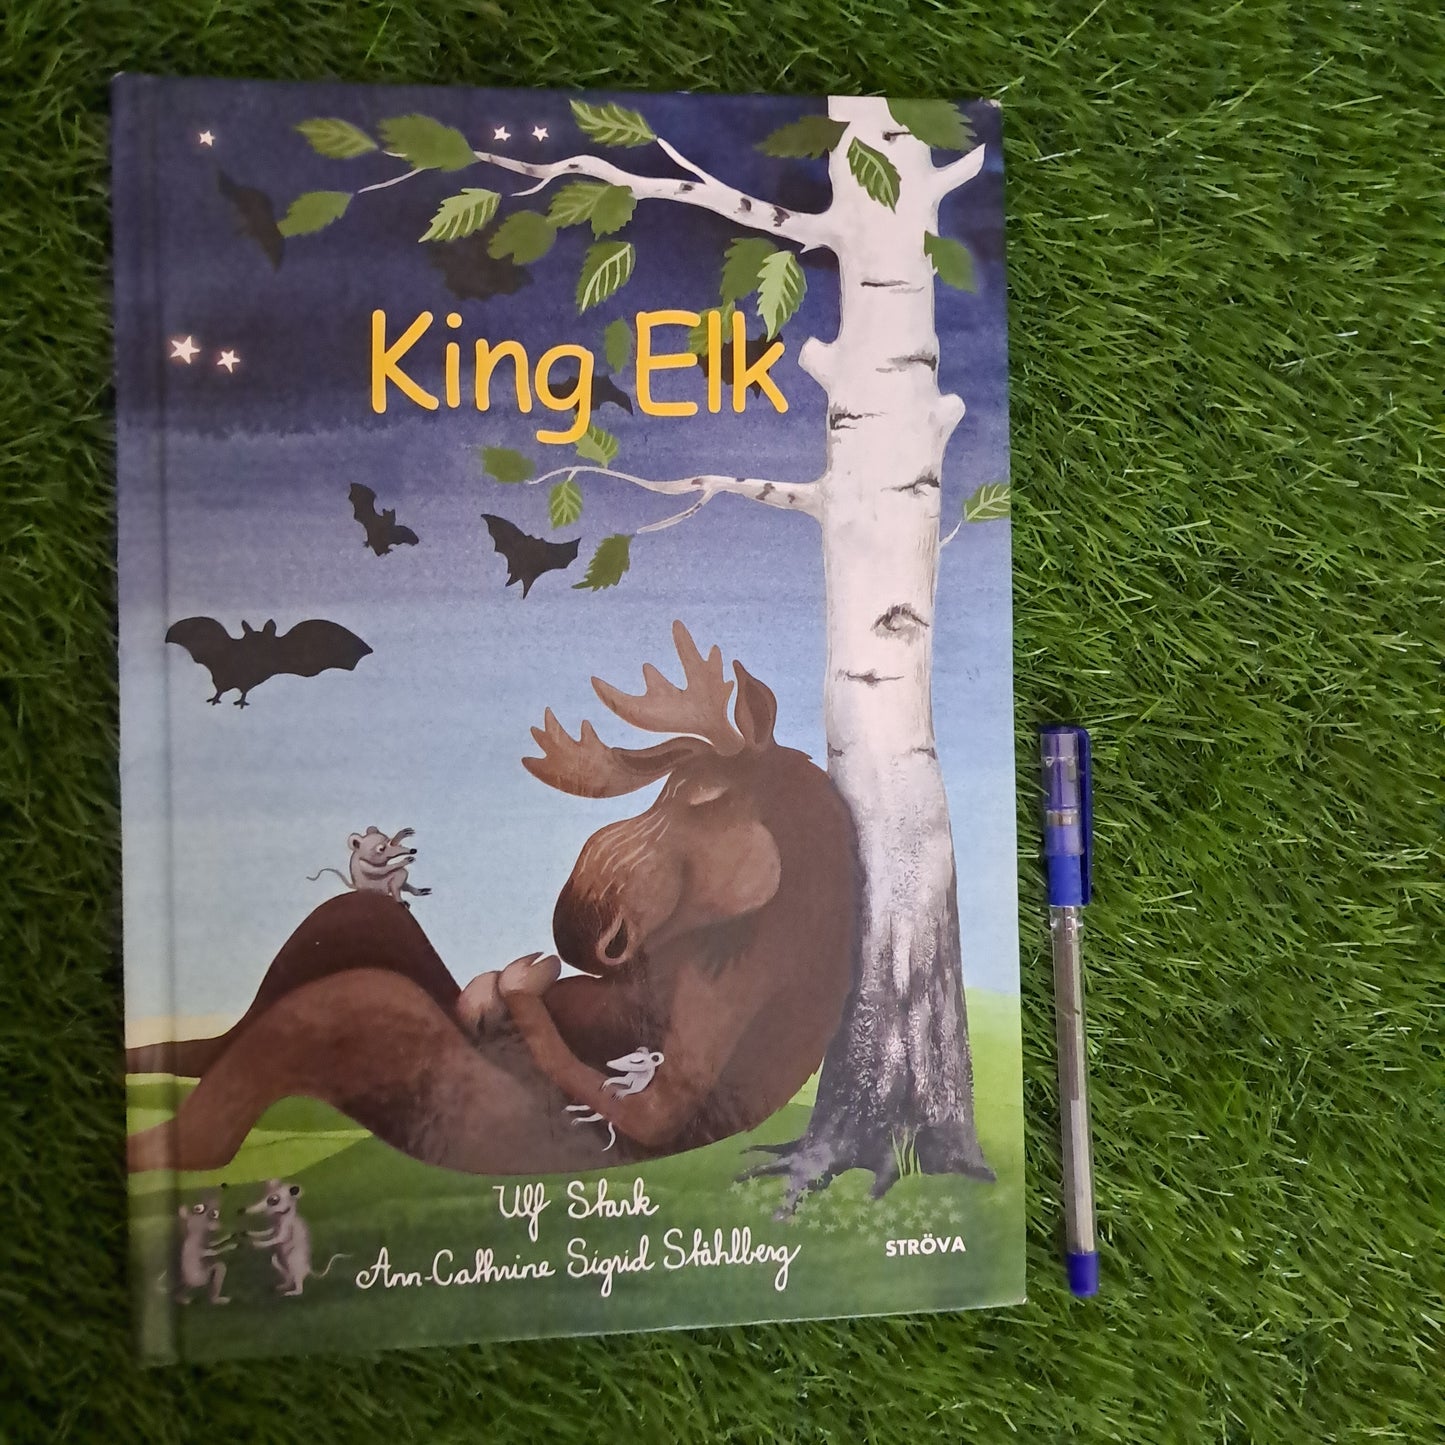 King Elk